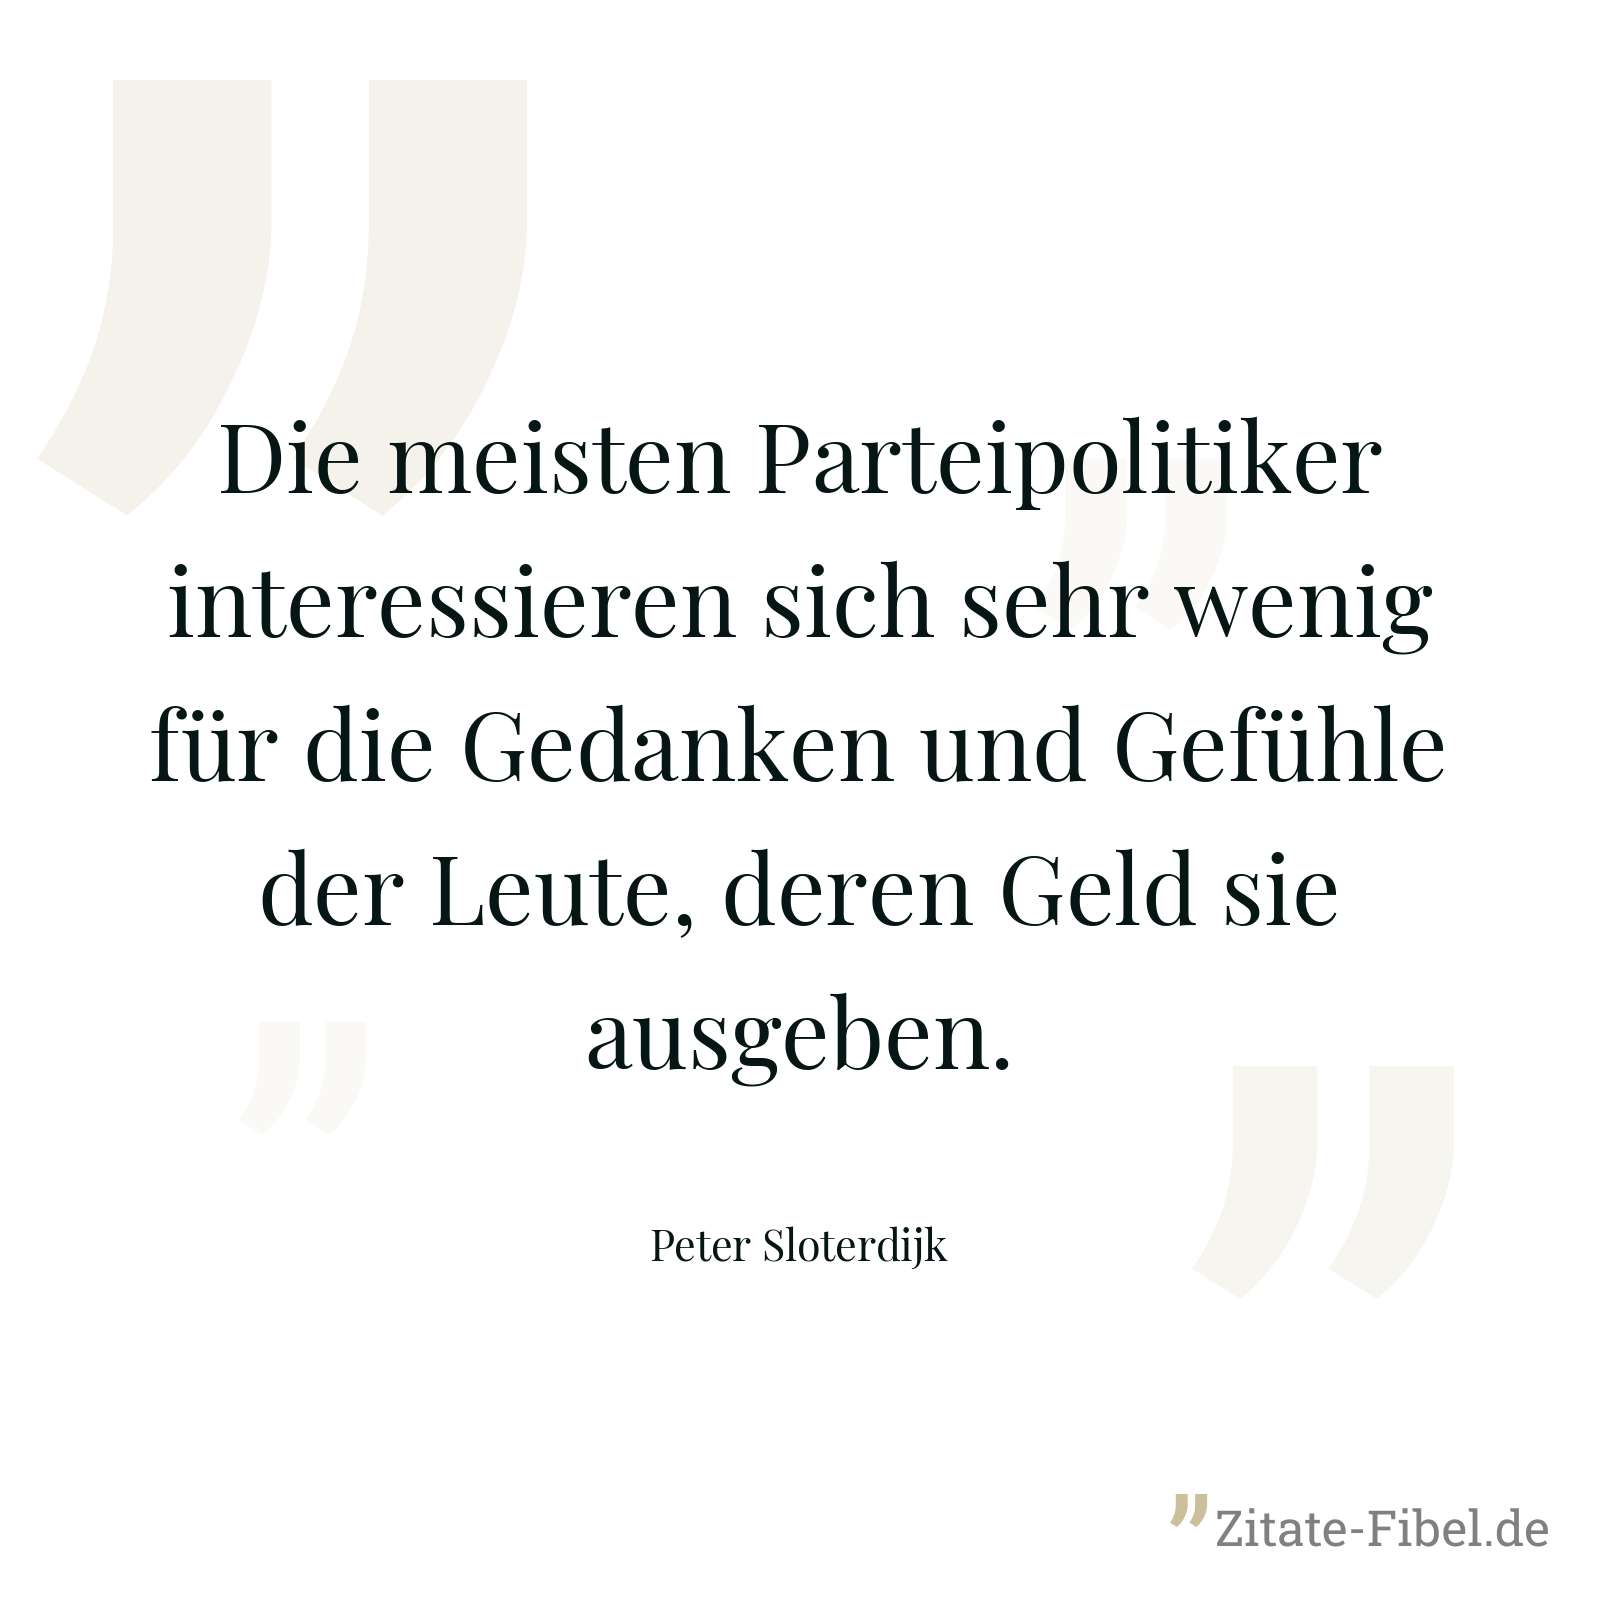 Die meisten Parteipolitiker interessieren sich sehr wenig für die Gedanken und Gefühle der Leute, deren Geld sie ausgeben. - Peter Sloterdijk